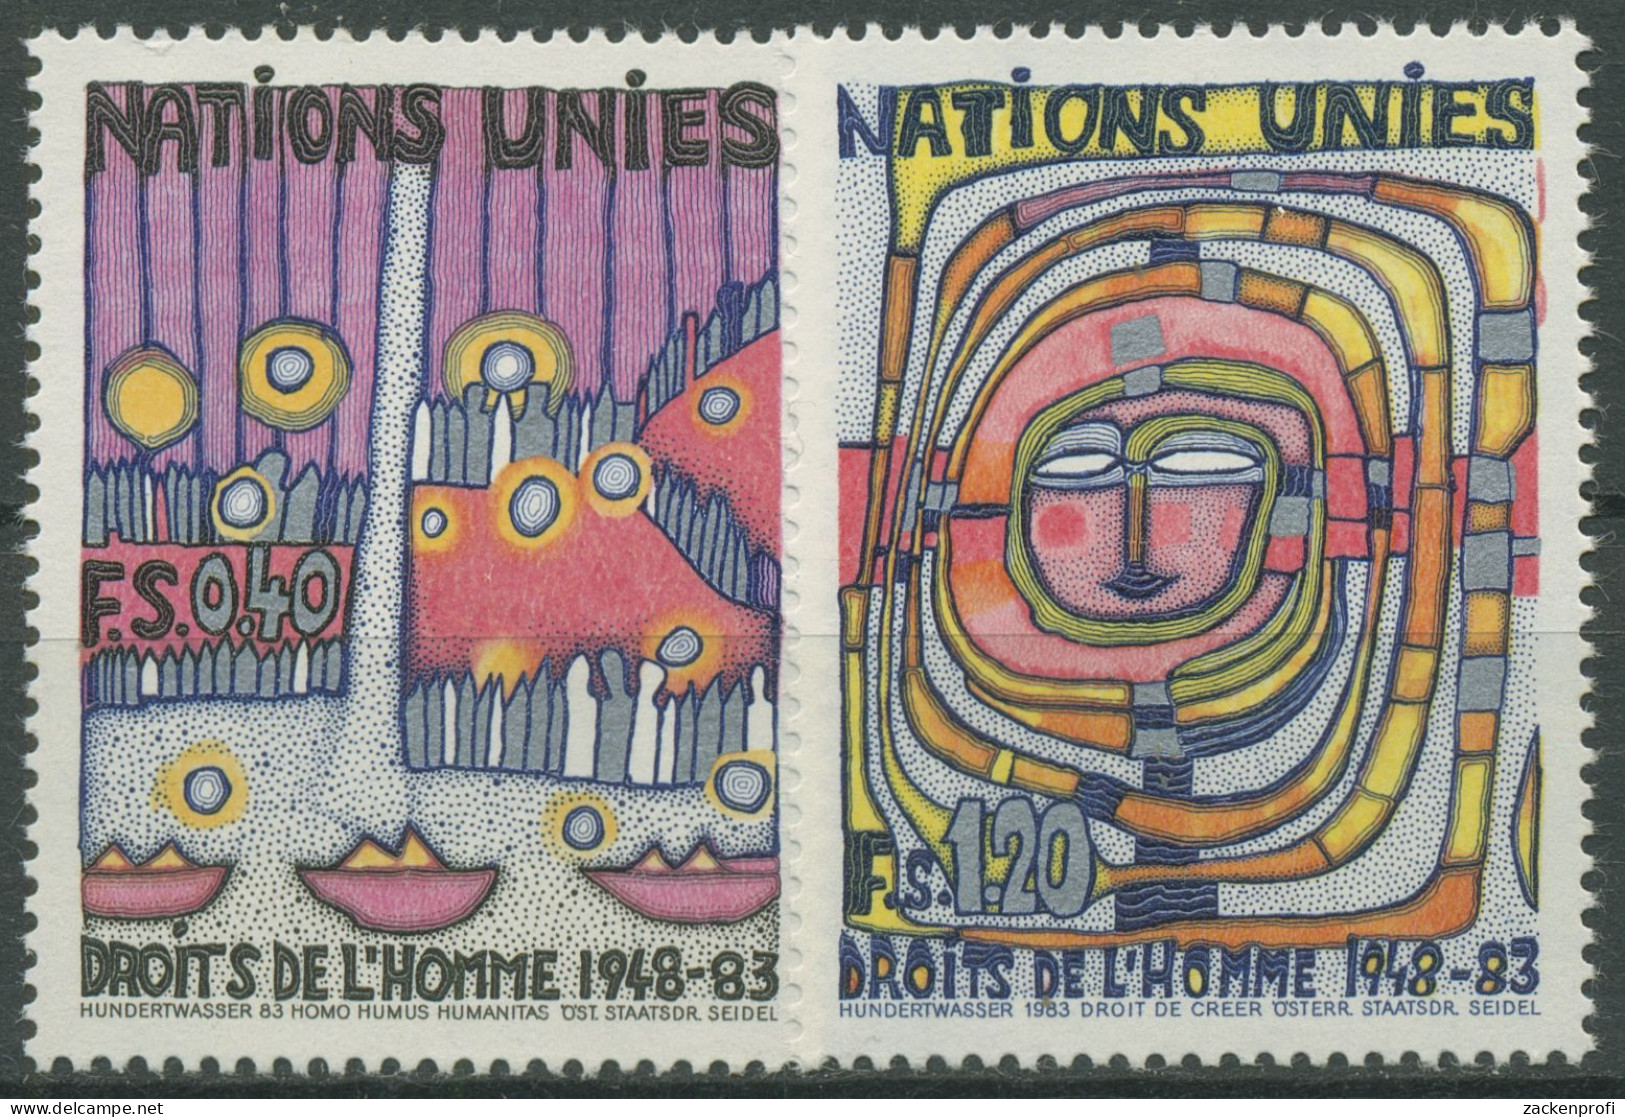 UNO Genf 1983 Erklärung Der Menschrechte Gemälde Hundertwasser 117/18 Postfrisch - Ungebraucht